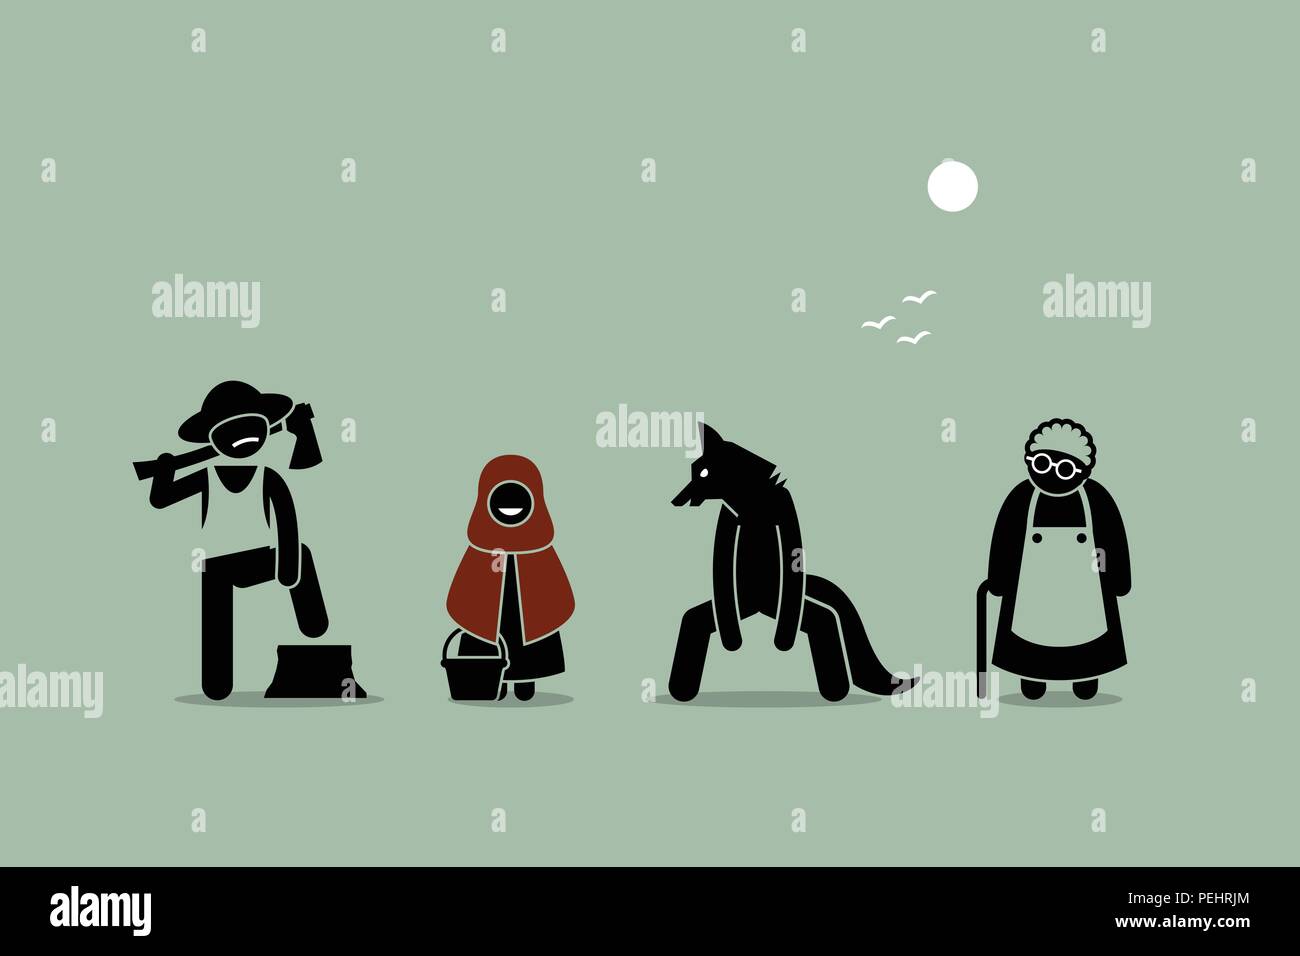 Vier wichtigsten Zeichen in Red Riding Hood Bedtime Story entworfen und im Strichmännchen Stil dargestellt. Stock Vektor